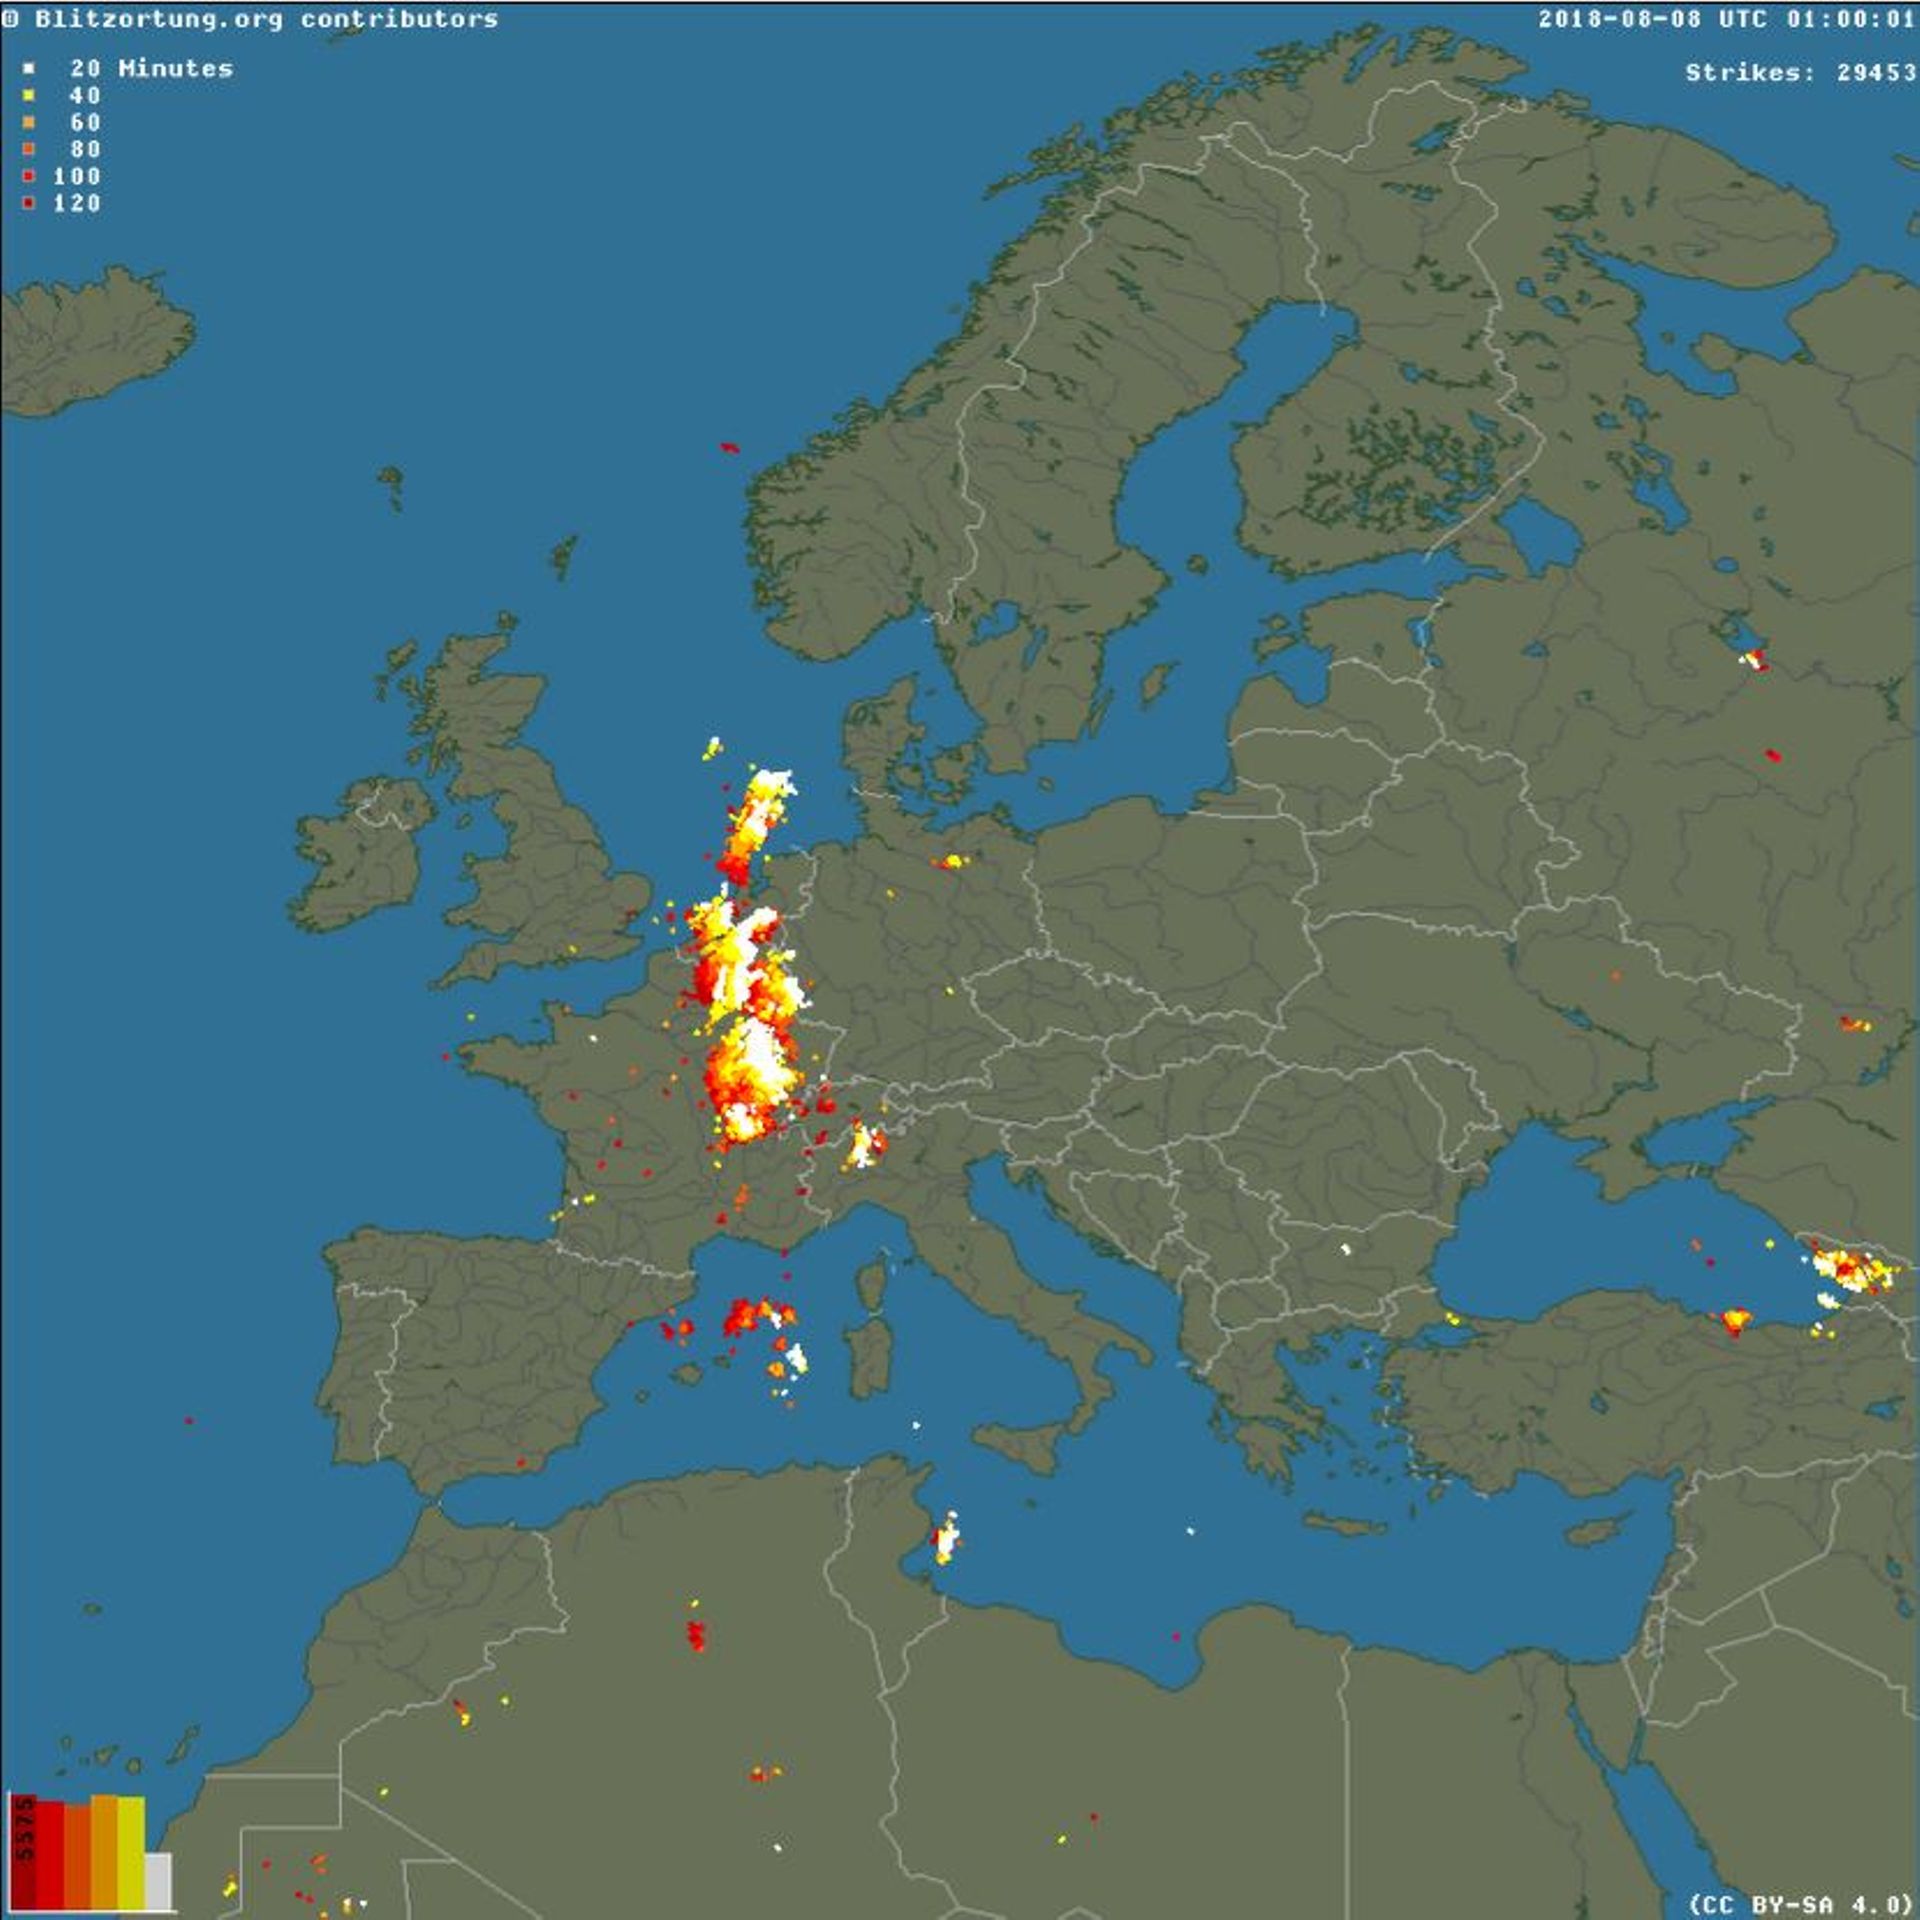 Les impacts de foudre en Europe ce 8 août 2018 à 1h du matin